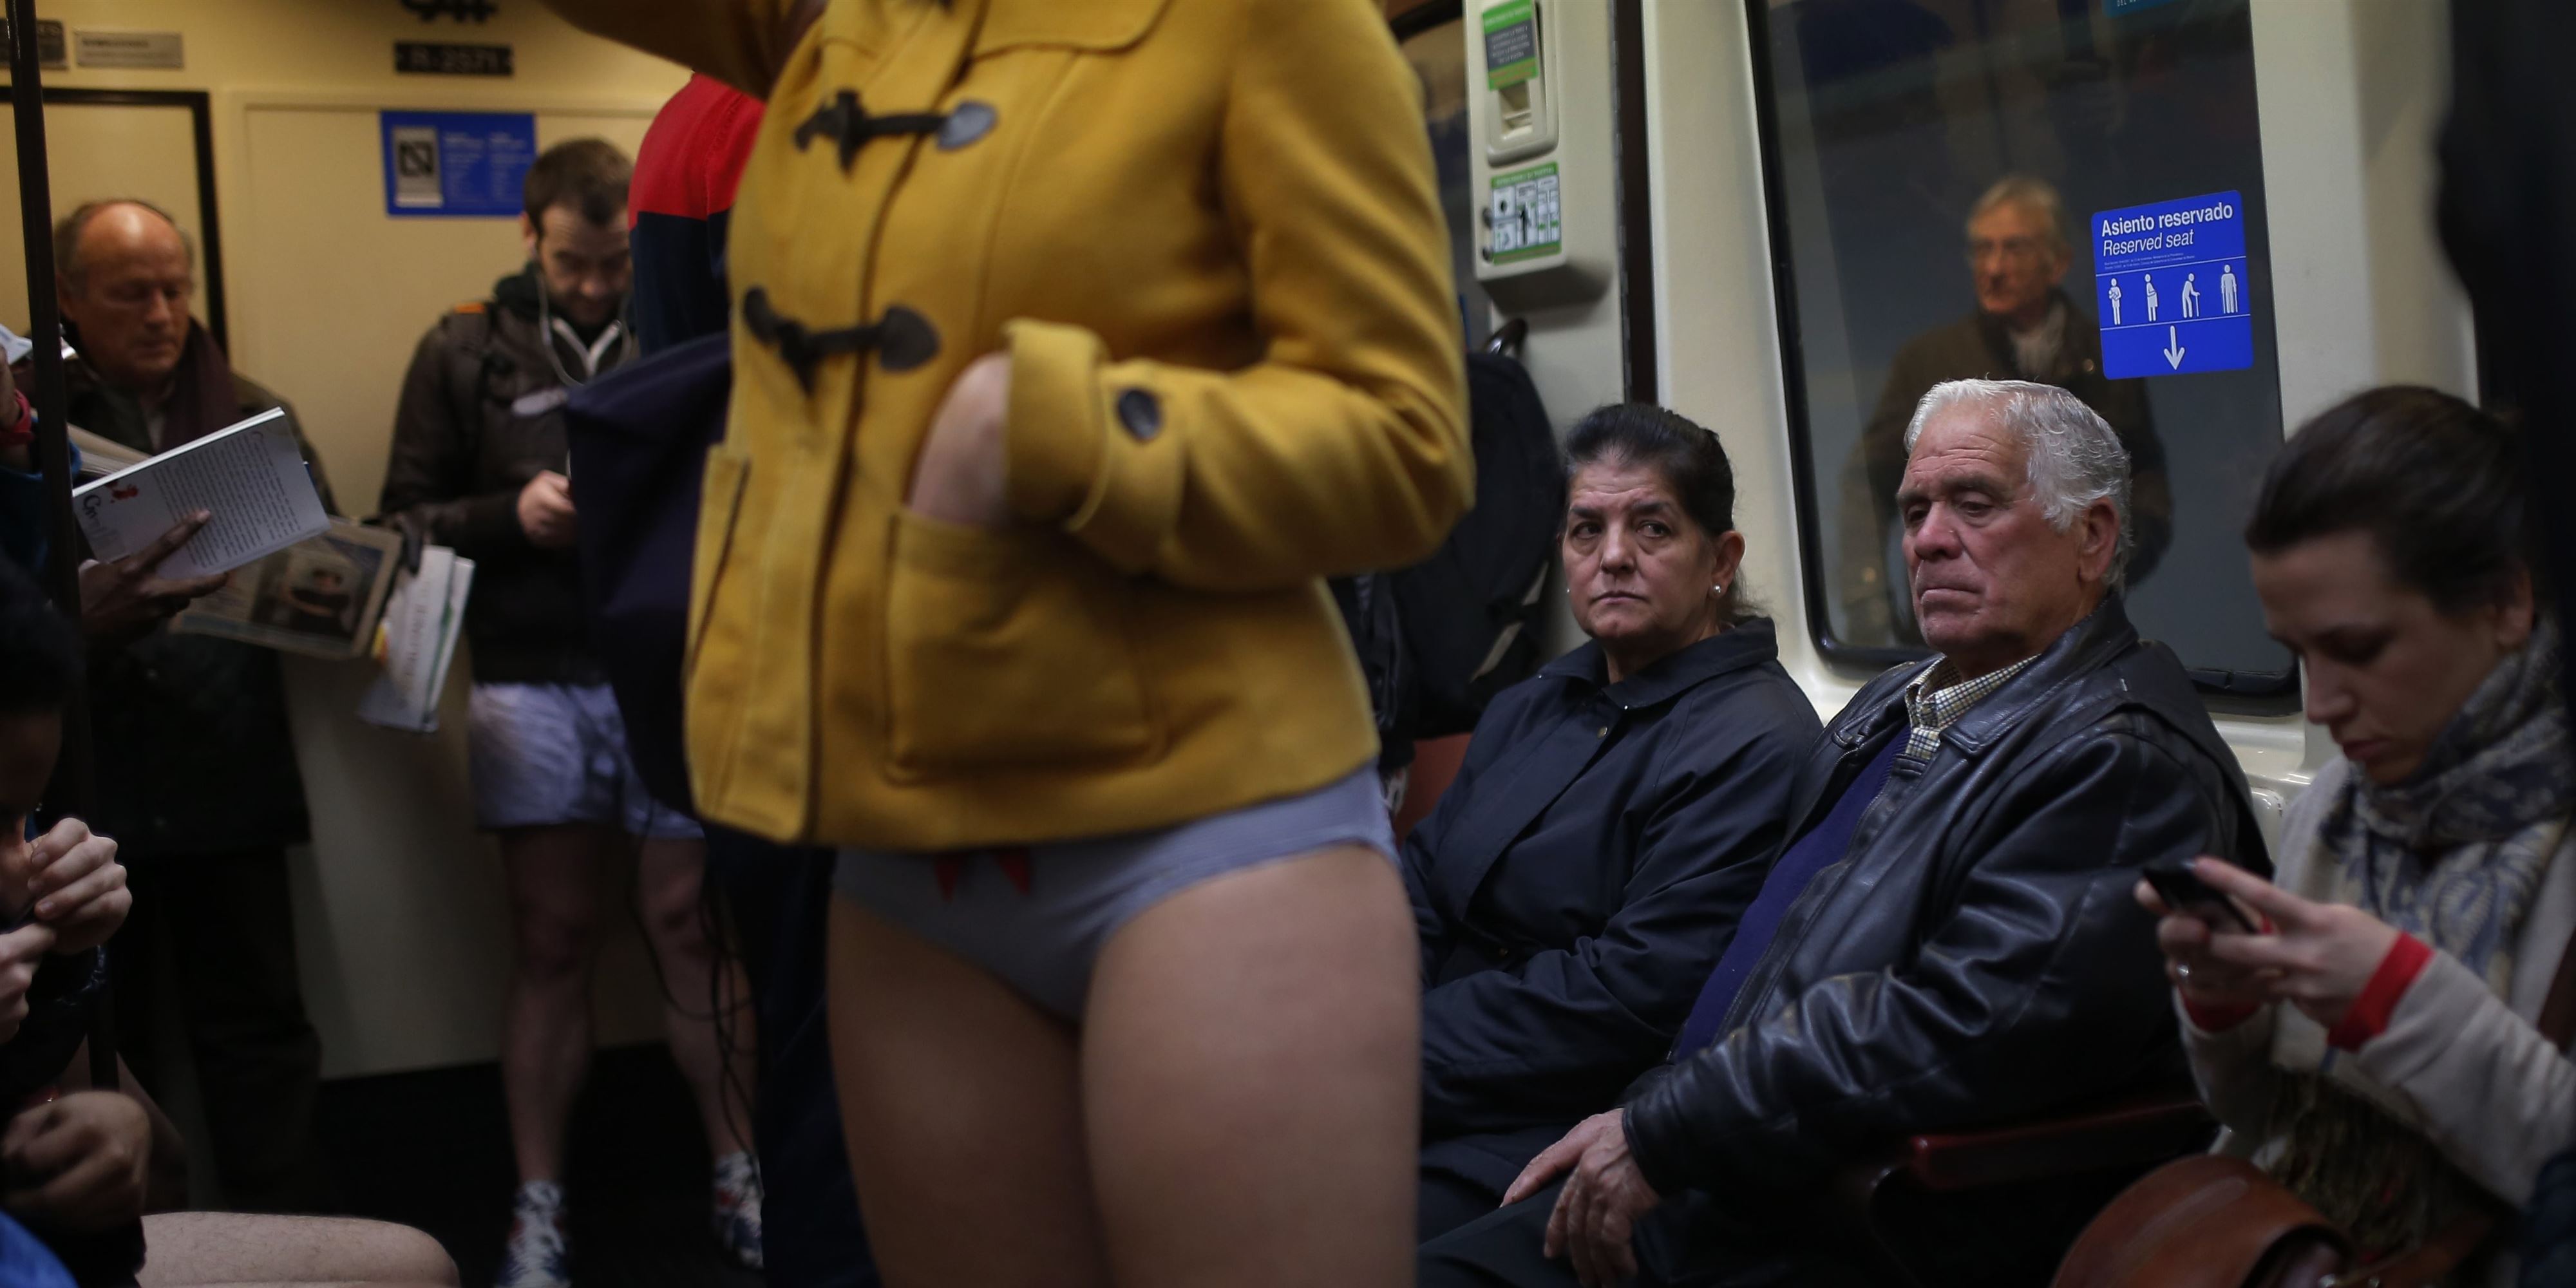 Мужчина без штанов. В метро без штанов. Эксгибиционисты мужчины. Женщина эксгибиционист. Женщины без штанов в метро.